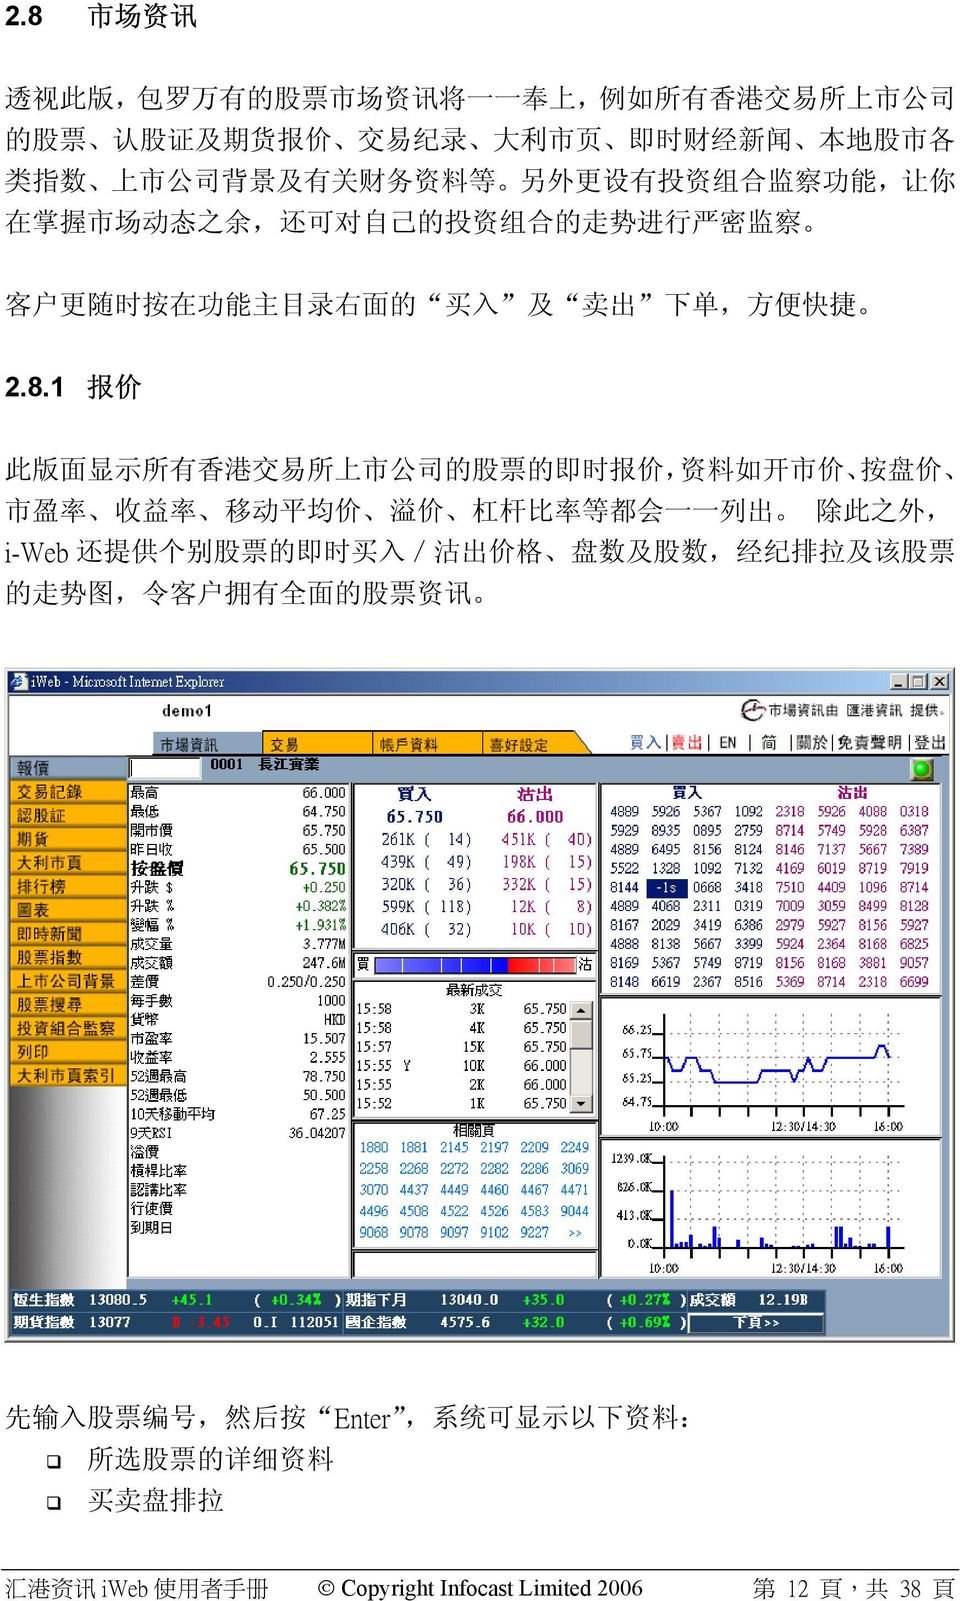 1 报 价 此 版 面 显 示 所 有 香 港 交 易 所 上 市 公 司 的 股 票 的 即 时 报 价, 资 料 如 开 市 价 按 盘 价 市 盈 率 收 益 率 移 动 平 均 价 溢 价 杠 杆 比 率 等 都 会 一 一 列 出 除 此 之 外, i-web 还 提 供 个 别 股 票 的 即 时 买 入 / 沽 出 价 格 盘 数